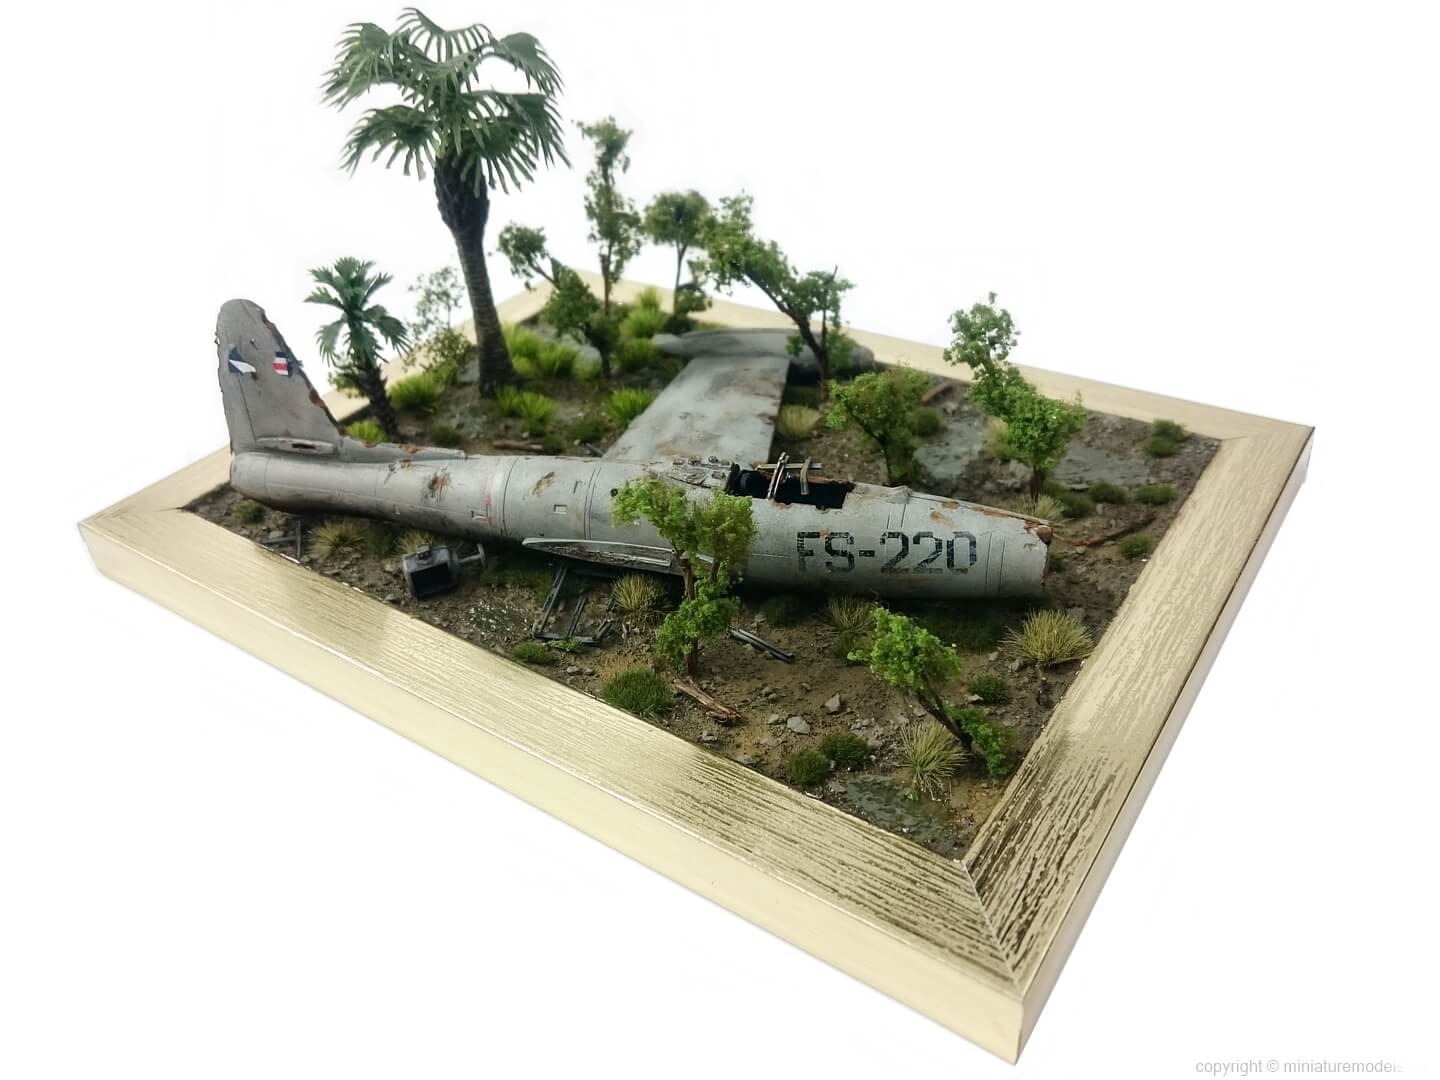 Diorama of wreck from Vietnam war